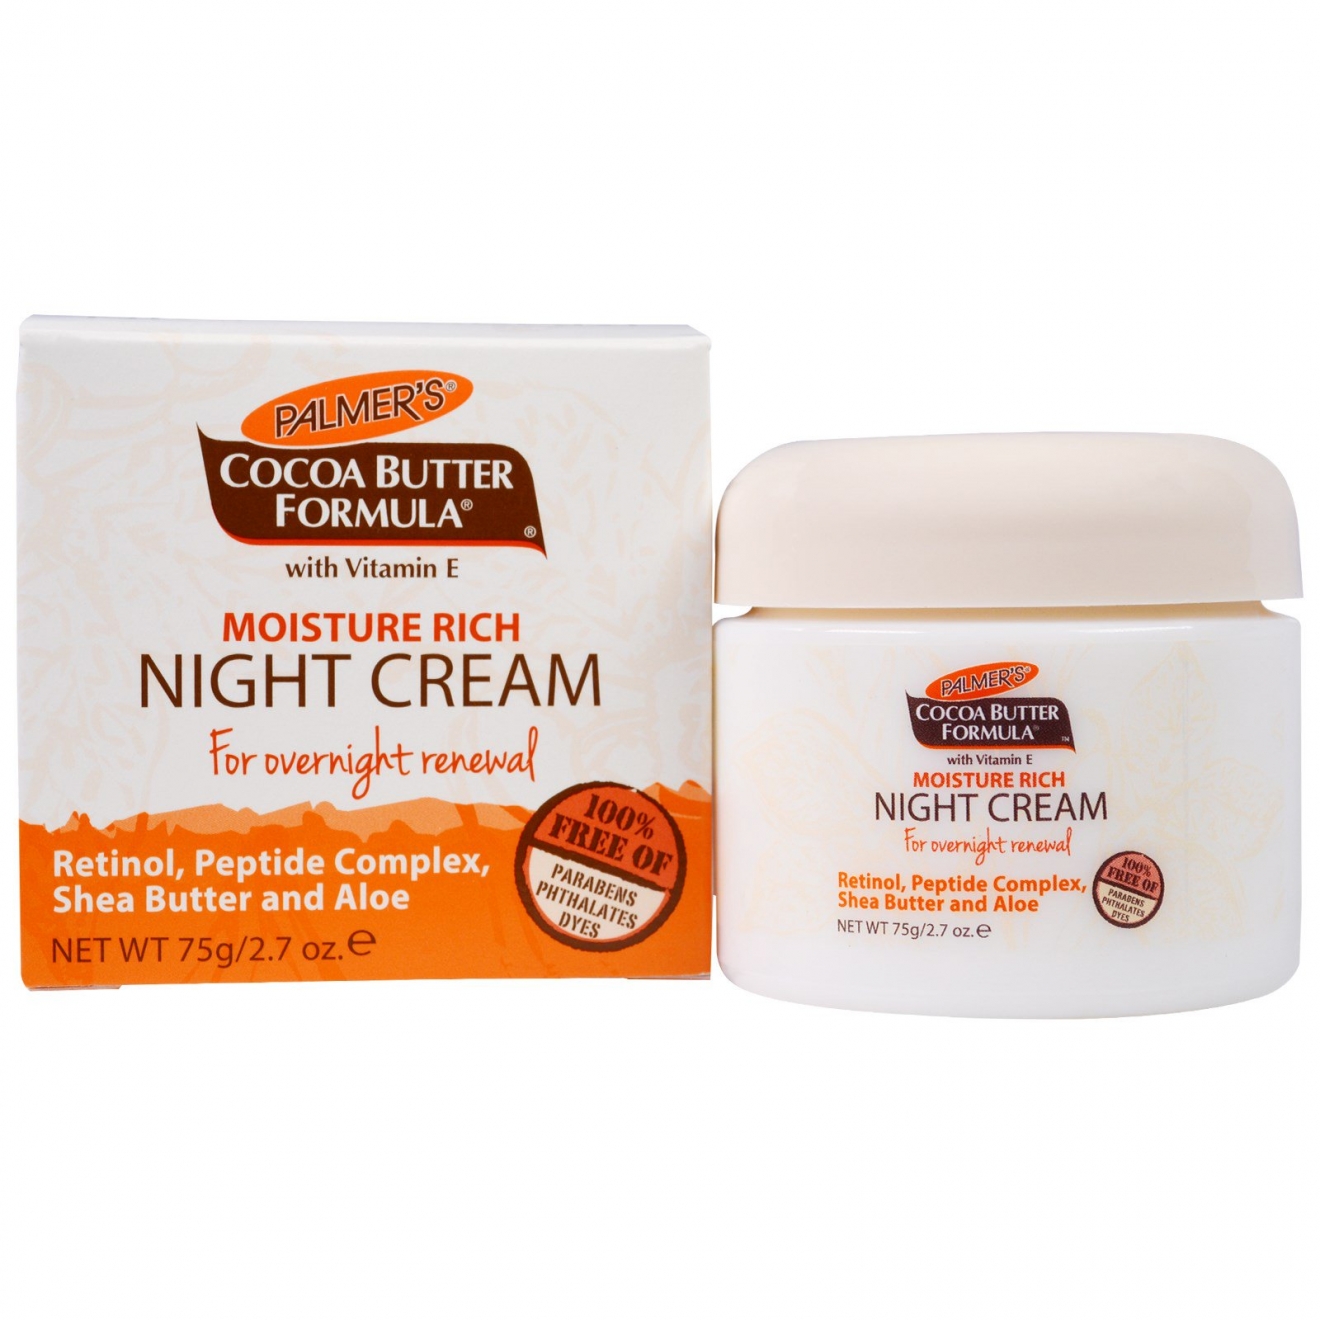 Cremă hidratantă pentru noapte ,Palmers, Cocoa Butter Formula, Moisture Rich Night Cream, Crema faciala de noapte, 75g